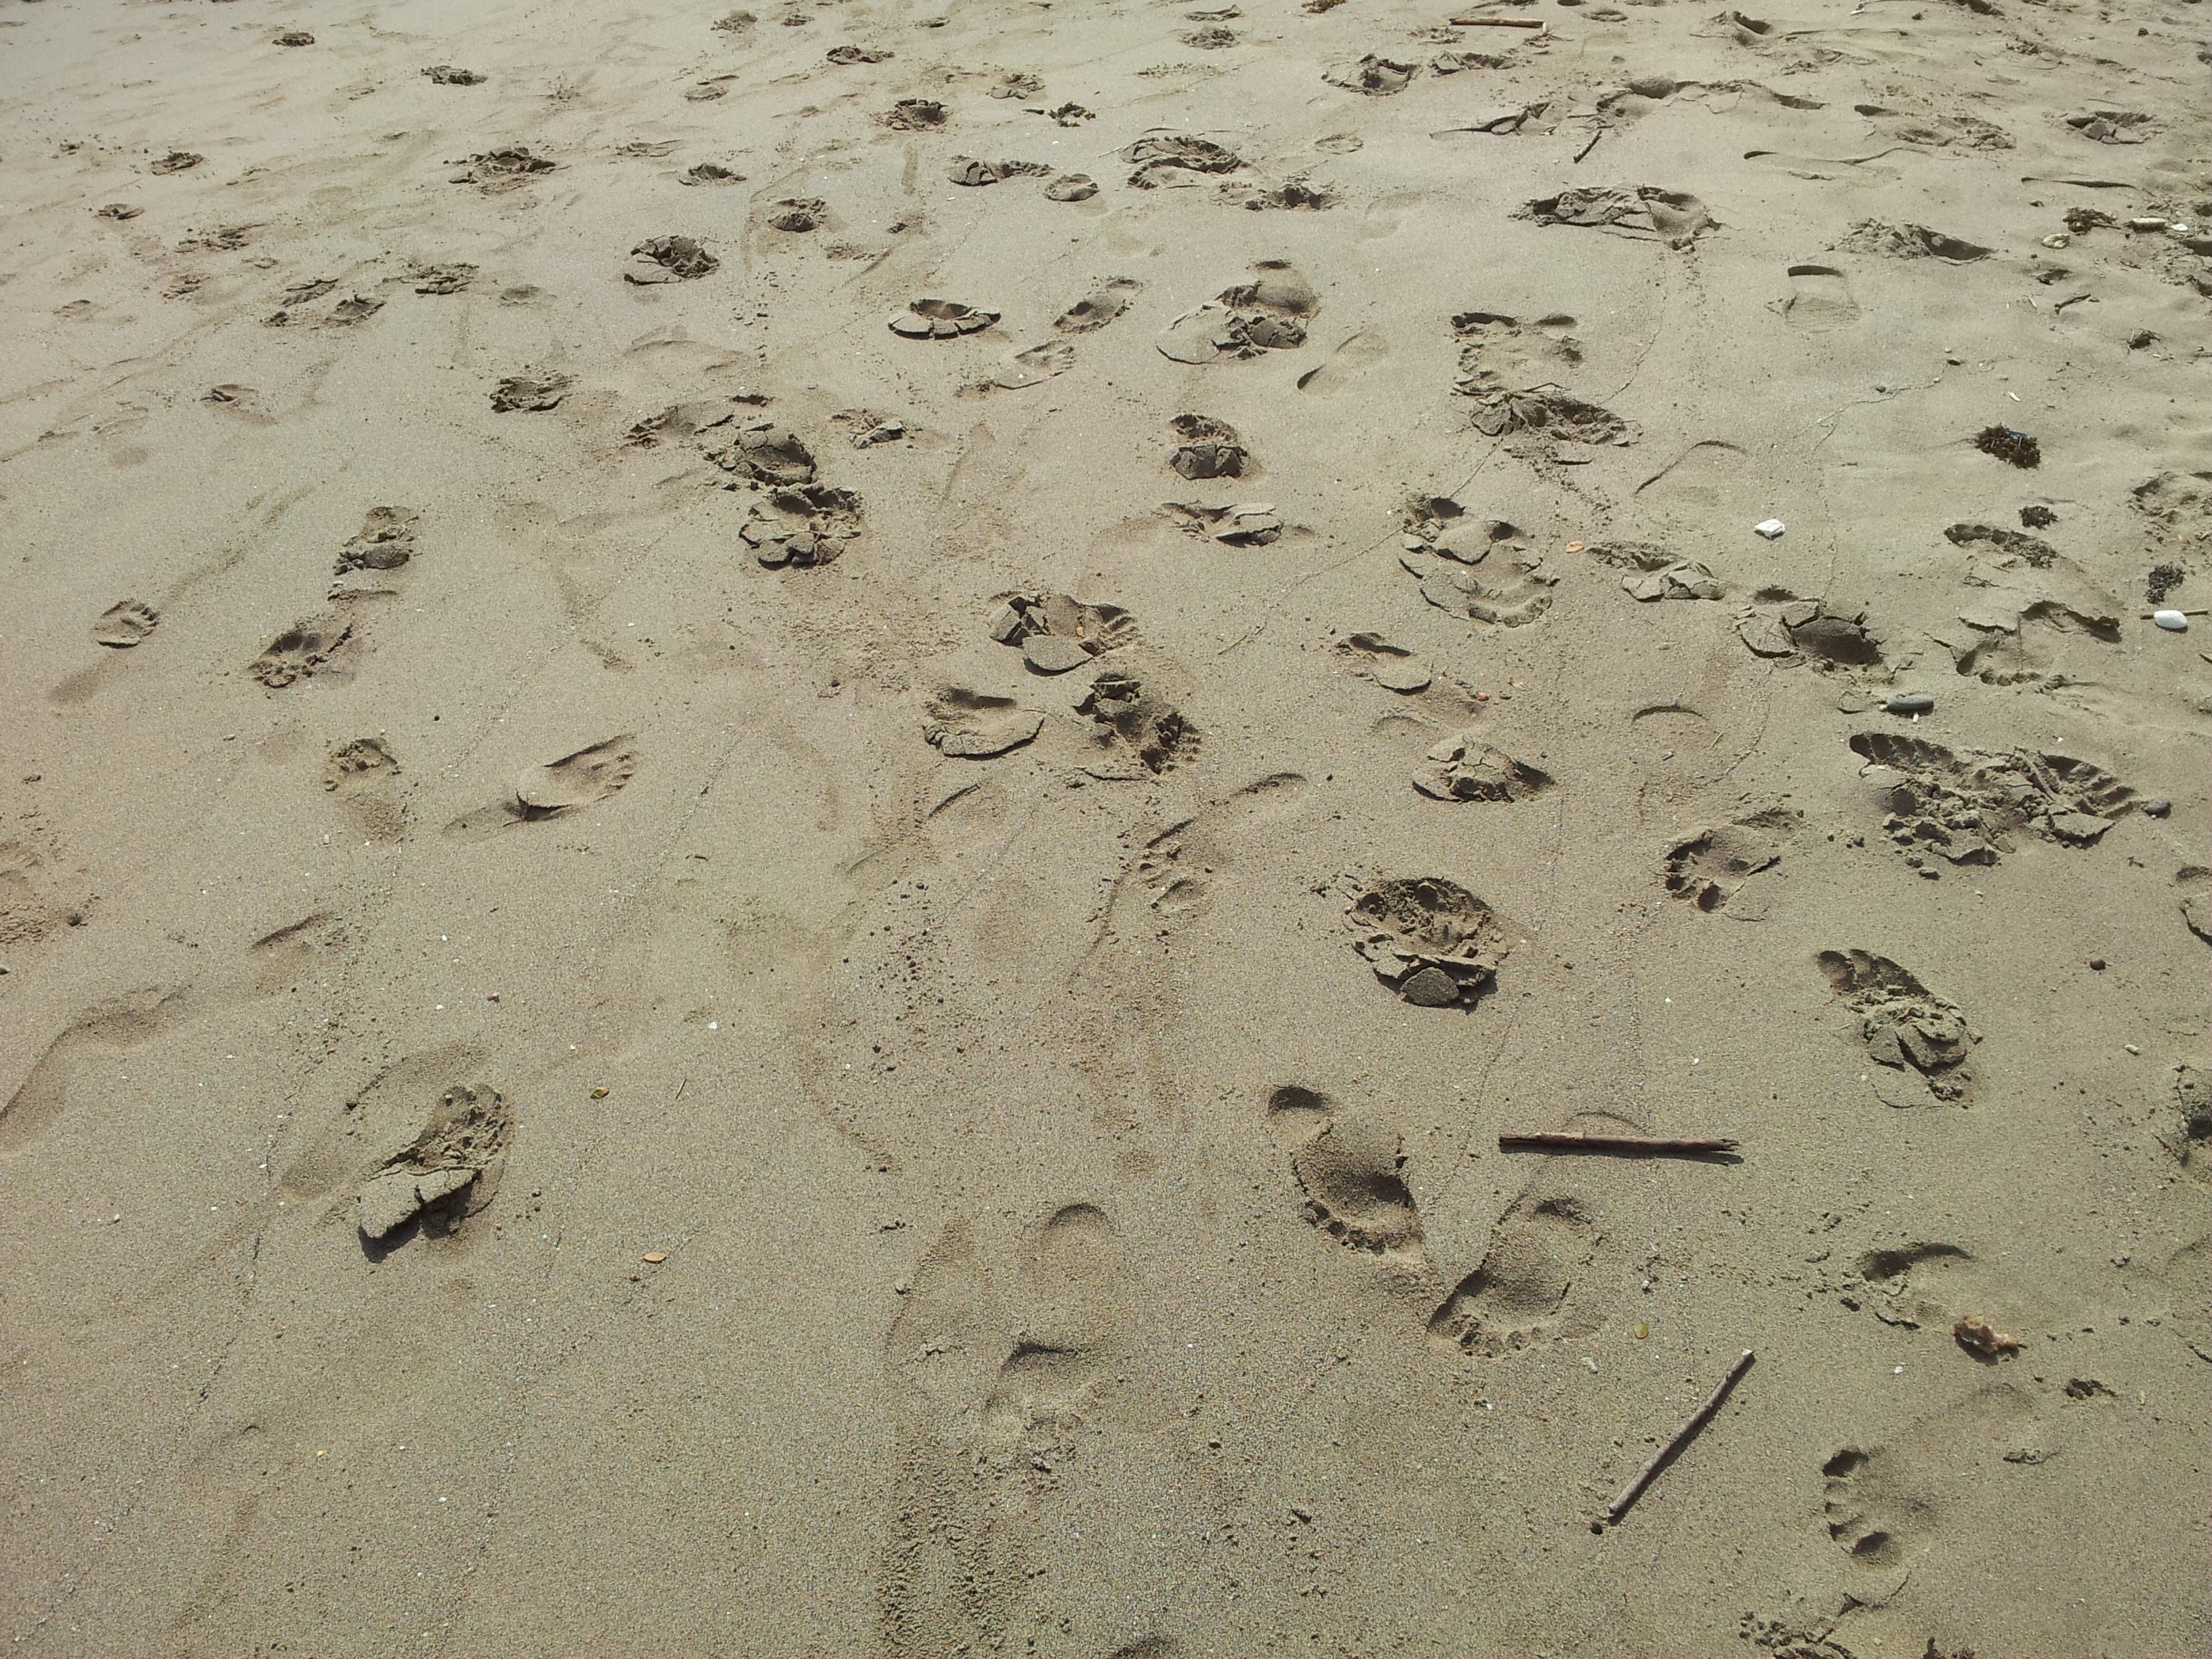 Foot, Barefoot, Tropical, Walk, Beach, footprint, sand